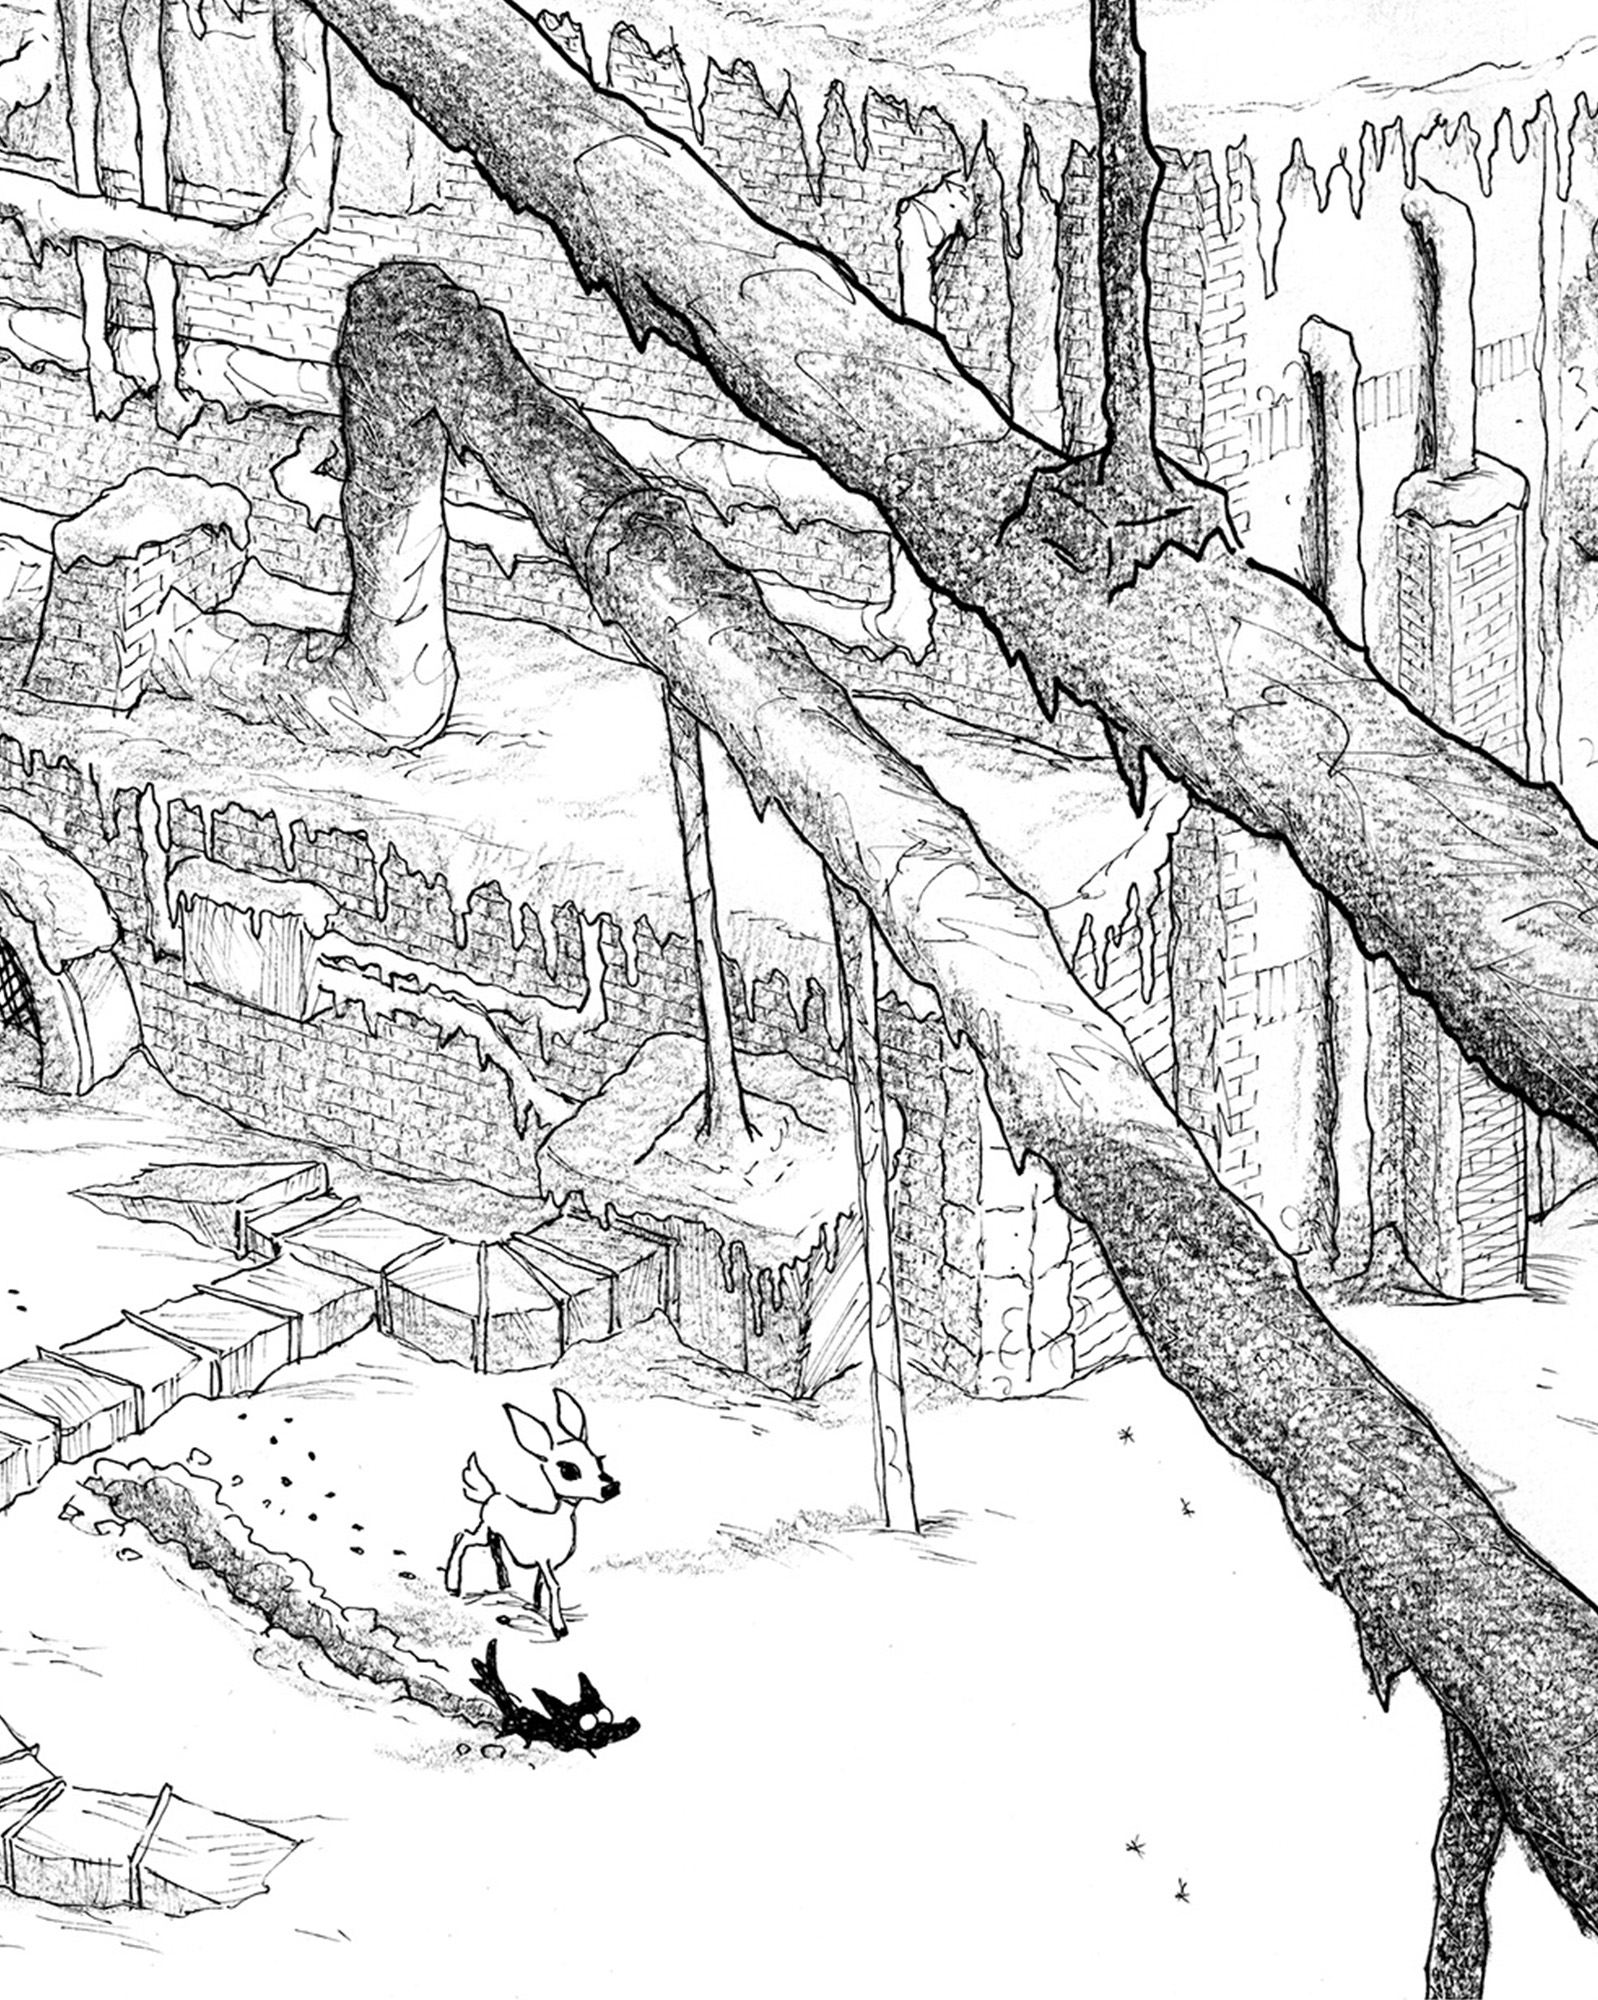 Illustration conceptuelle du jeu Blanc en noir et blanc. Le faon et le louveteau marchent seuls dans un paysage urbain, vraisemblablement une usine, enneigé après une violente tempête.